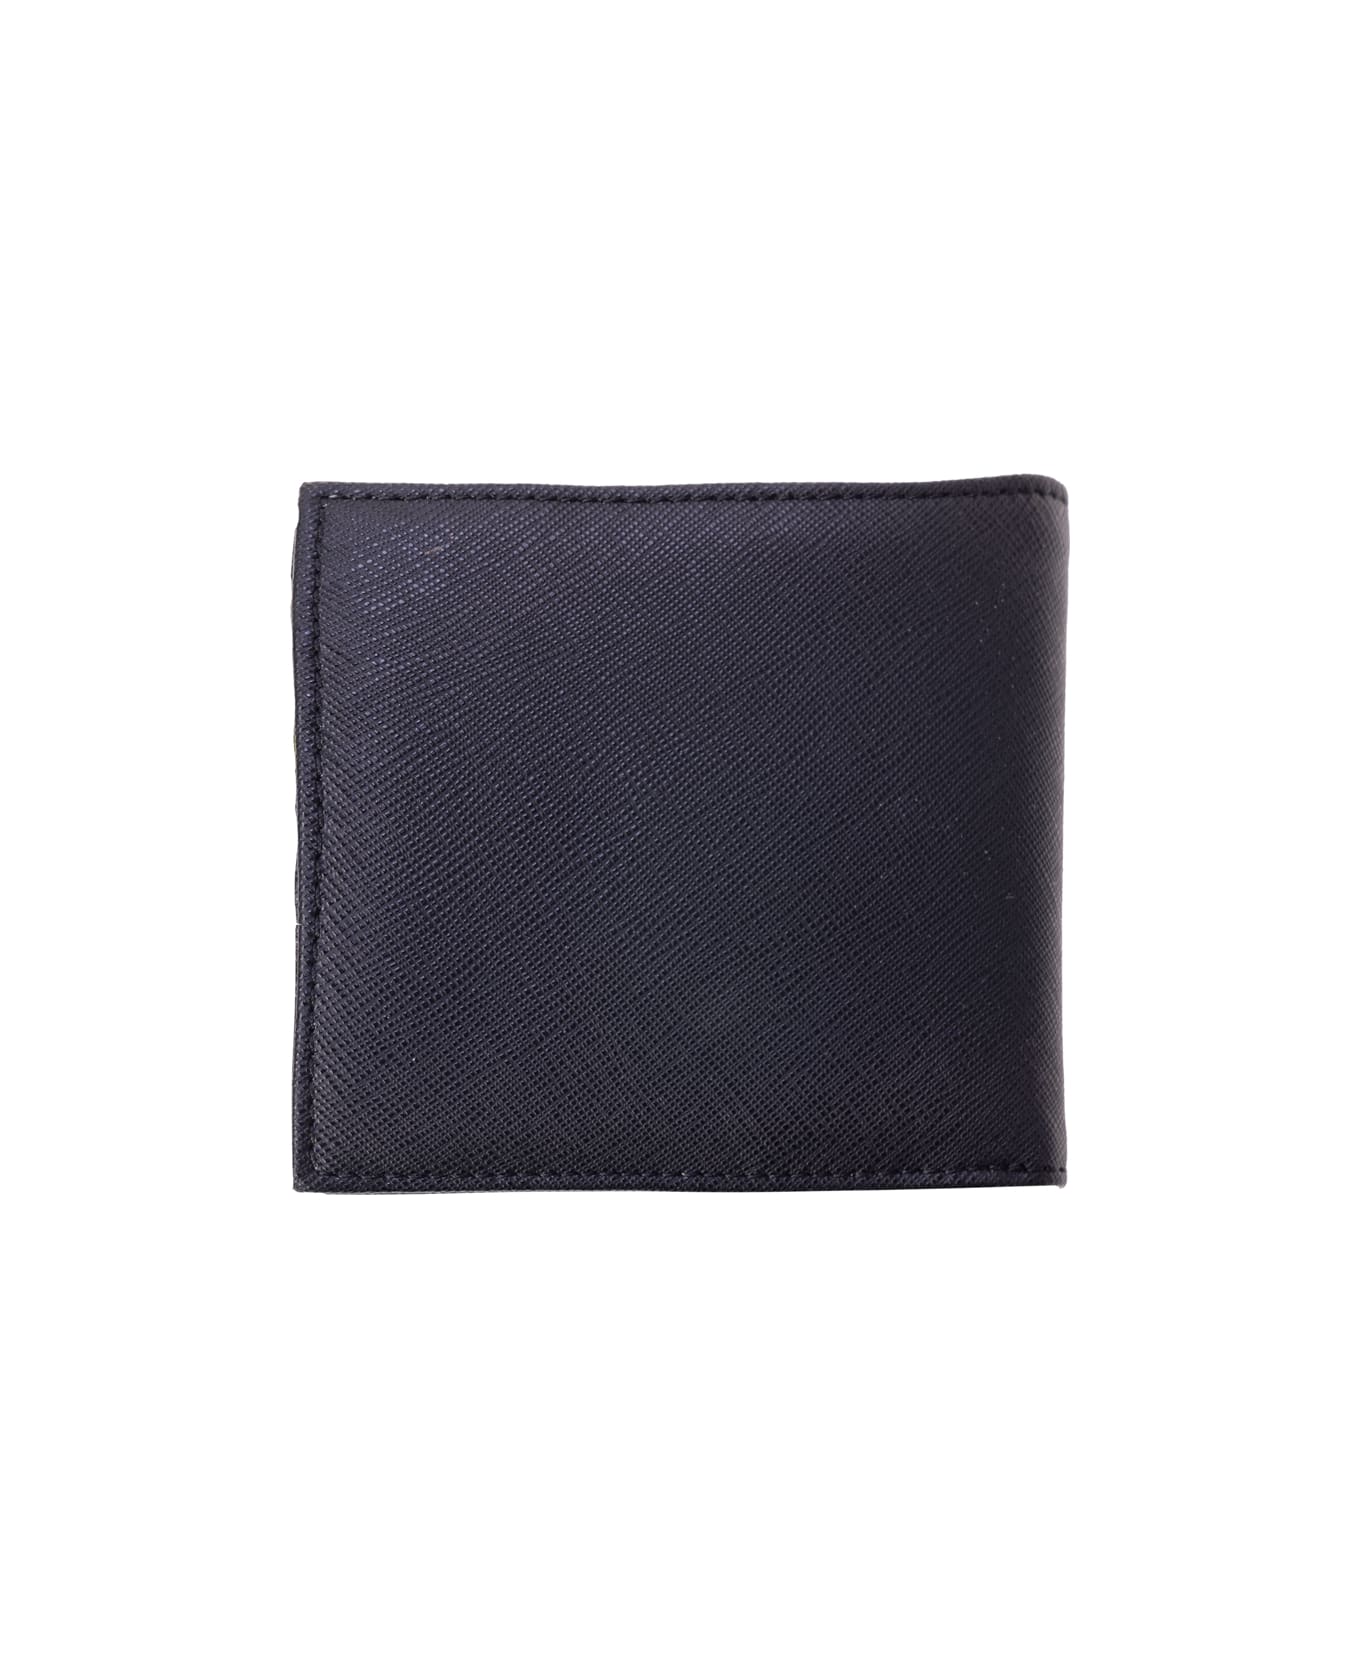 Emporio Armani Wallets Black - Black